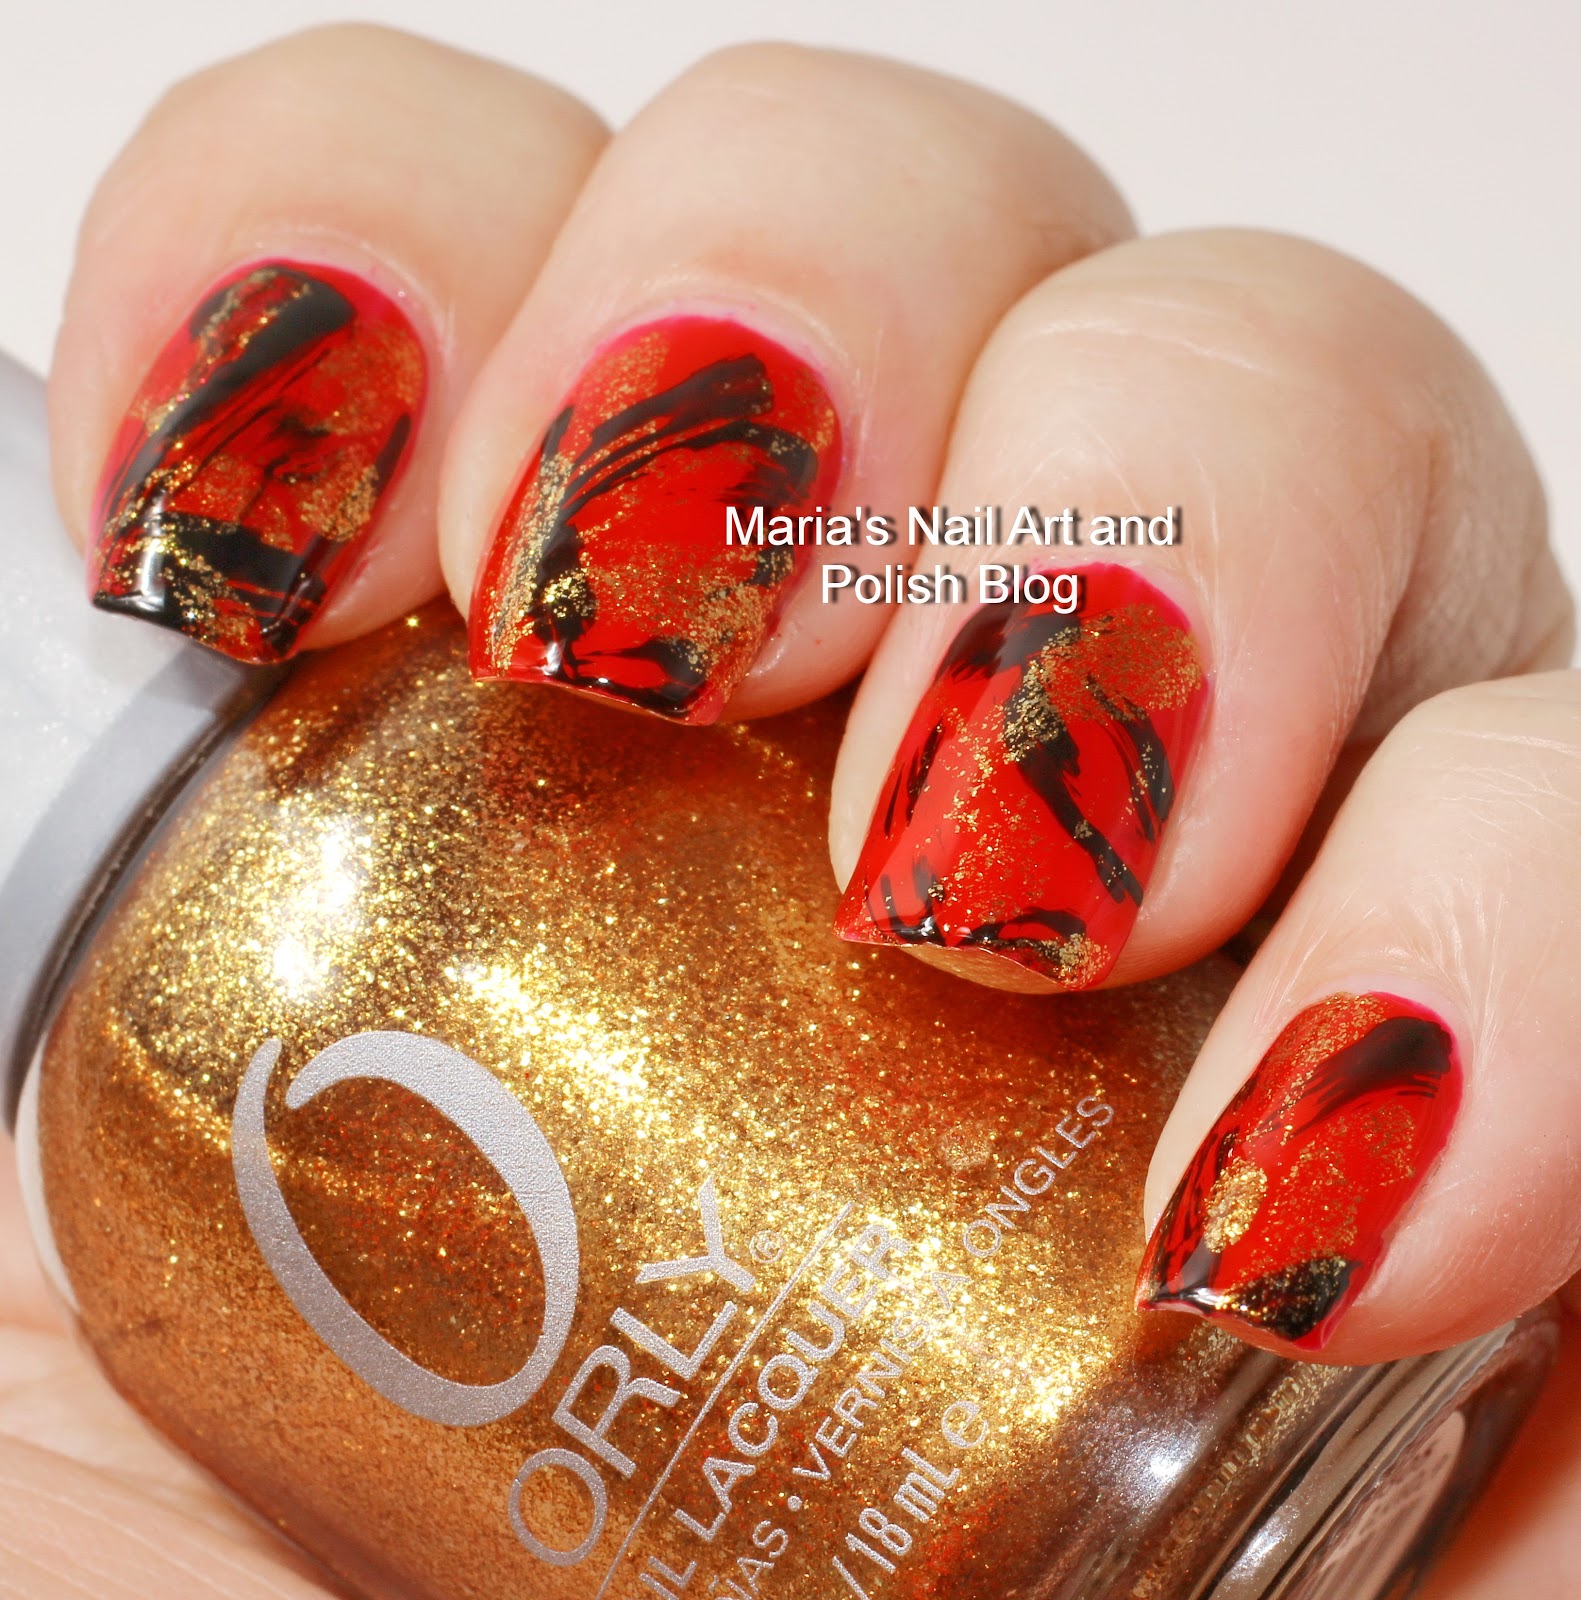 Marias Nail Art and Polish Blog: Red, gold and black brush stroke nail art